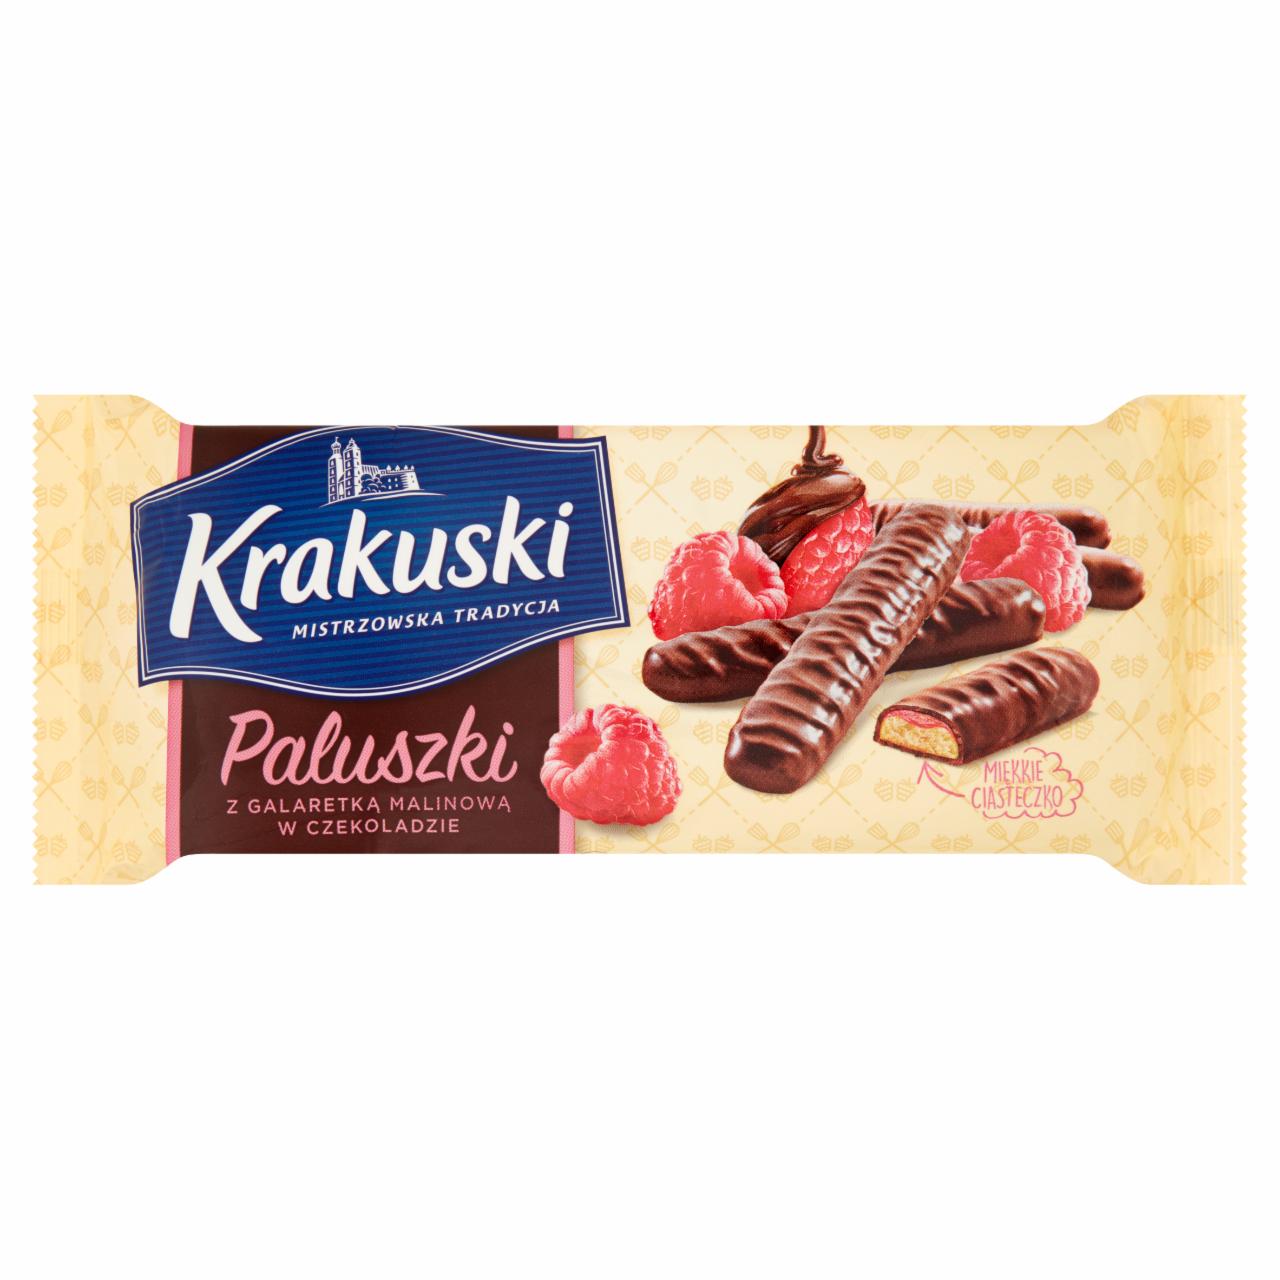 Zdjęcia - Paluszki z galaretką malinową w czekoladzie Krakuski